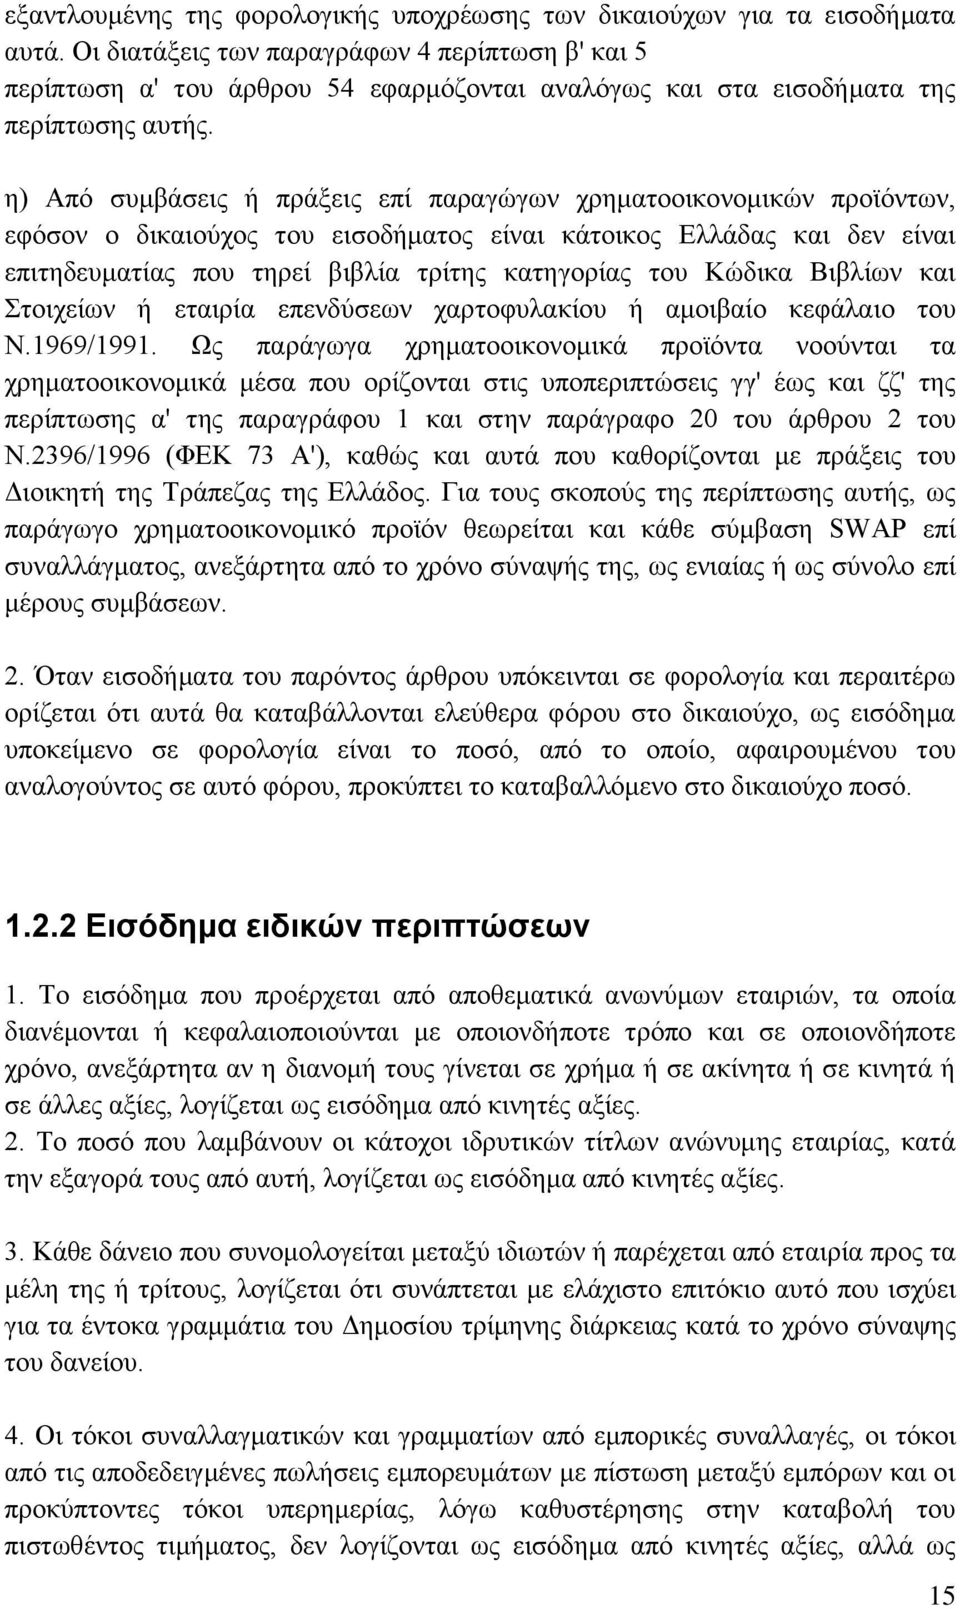 η) Από συμβάσεις ή πράξεις επί παραγώγων χρηματοοικονομικών προϊόντων, εφόσον ο δικαιούχος του εισοδήματος είναι κάτοικος Ελλάδας και δεν είναι επιτηδευματίας που τηρεί βιβλία τρίτης κατηγορίας του